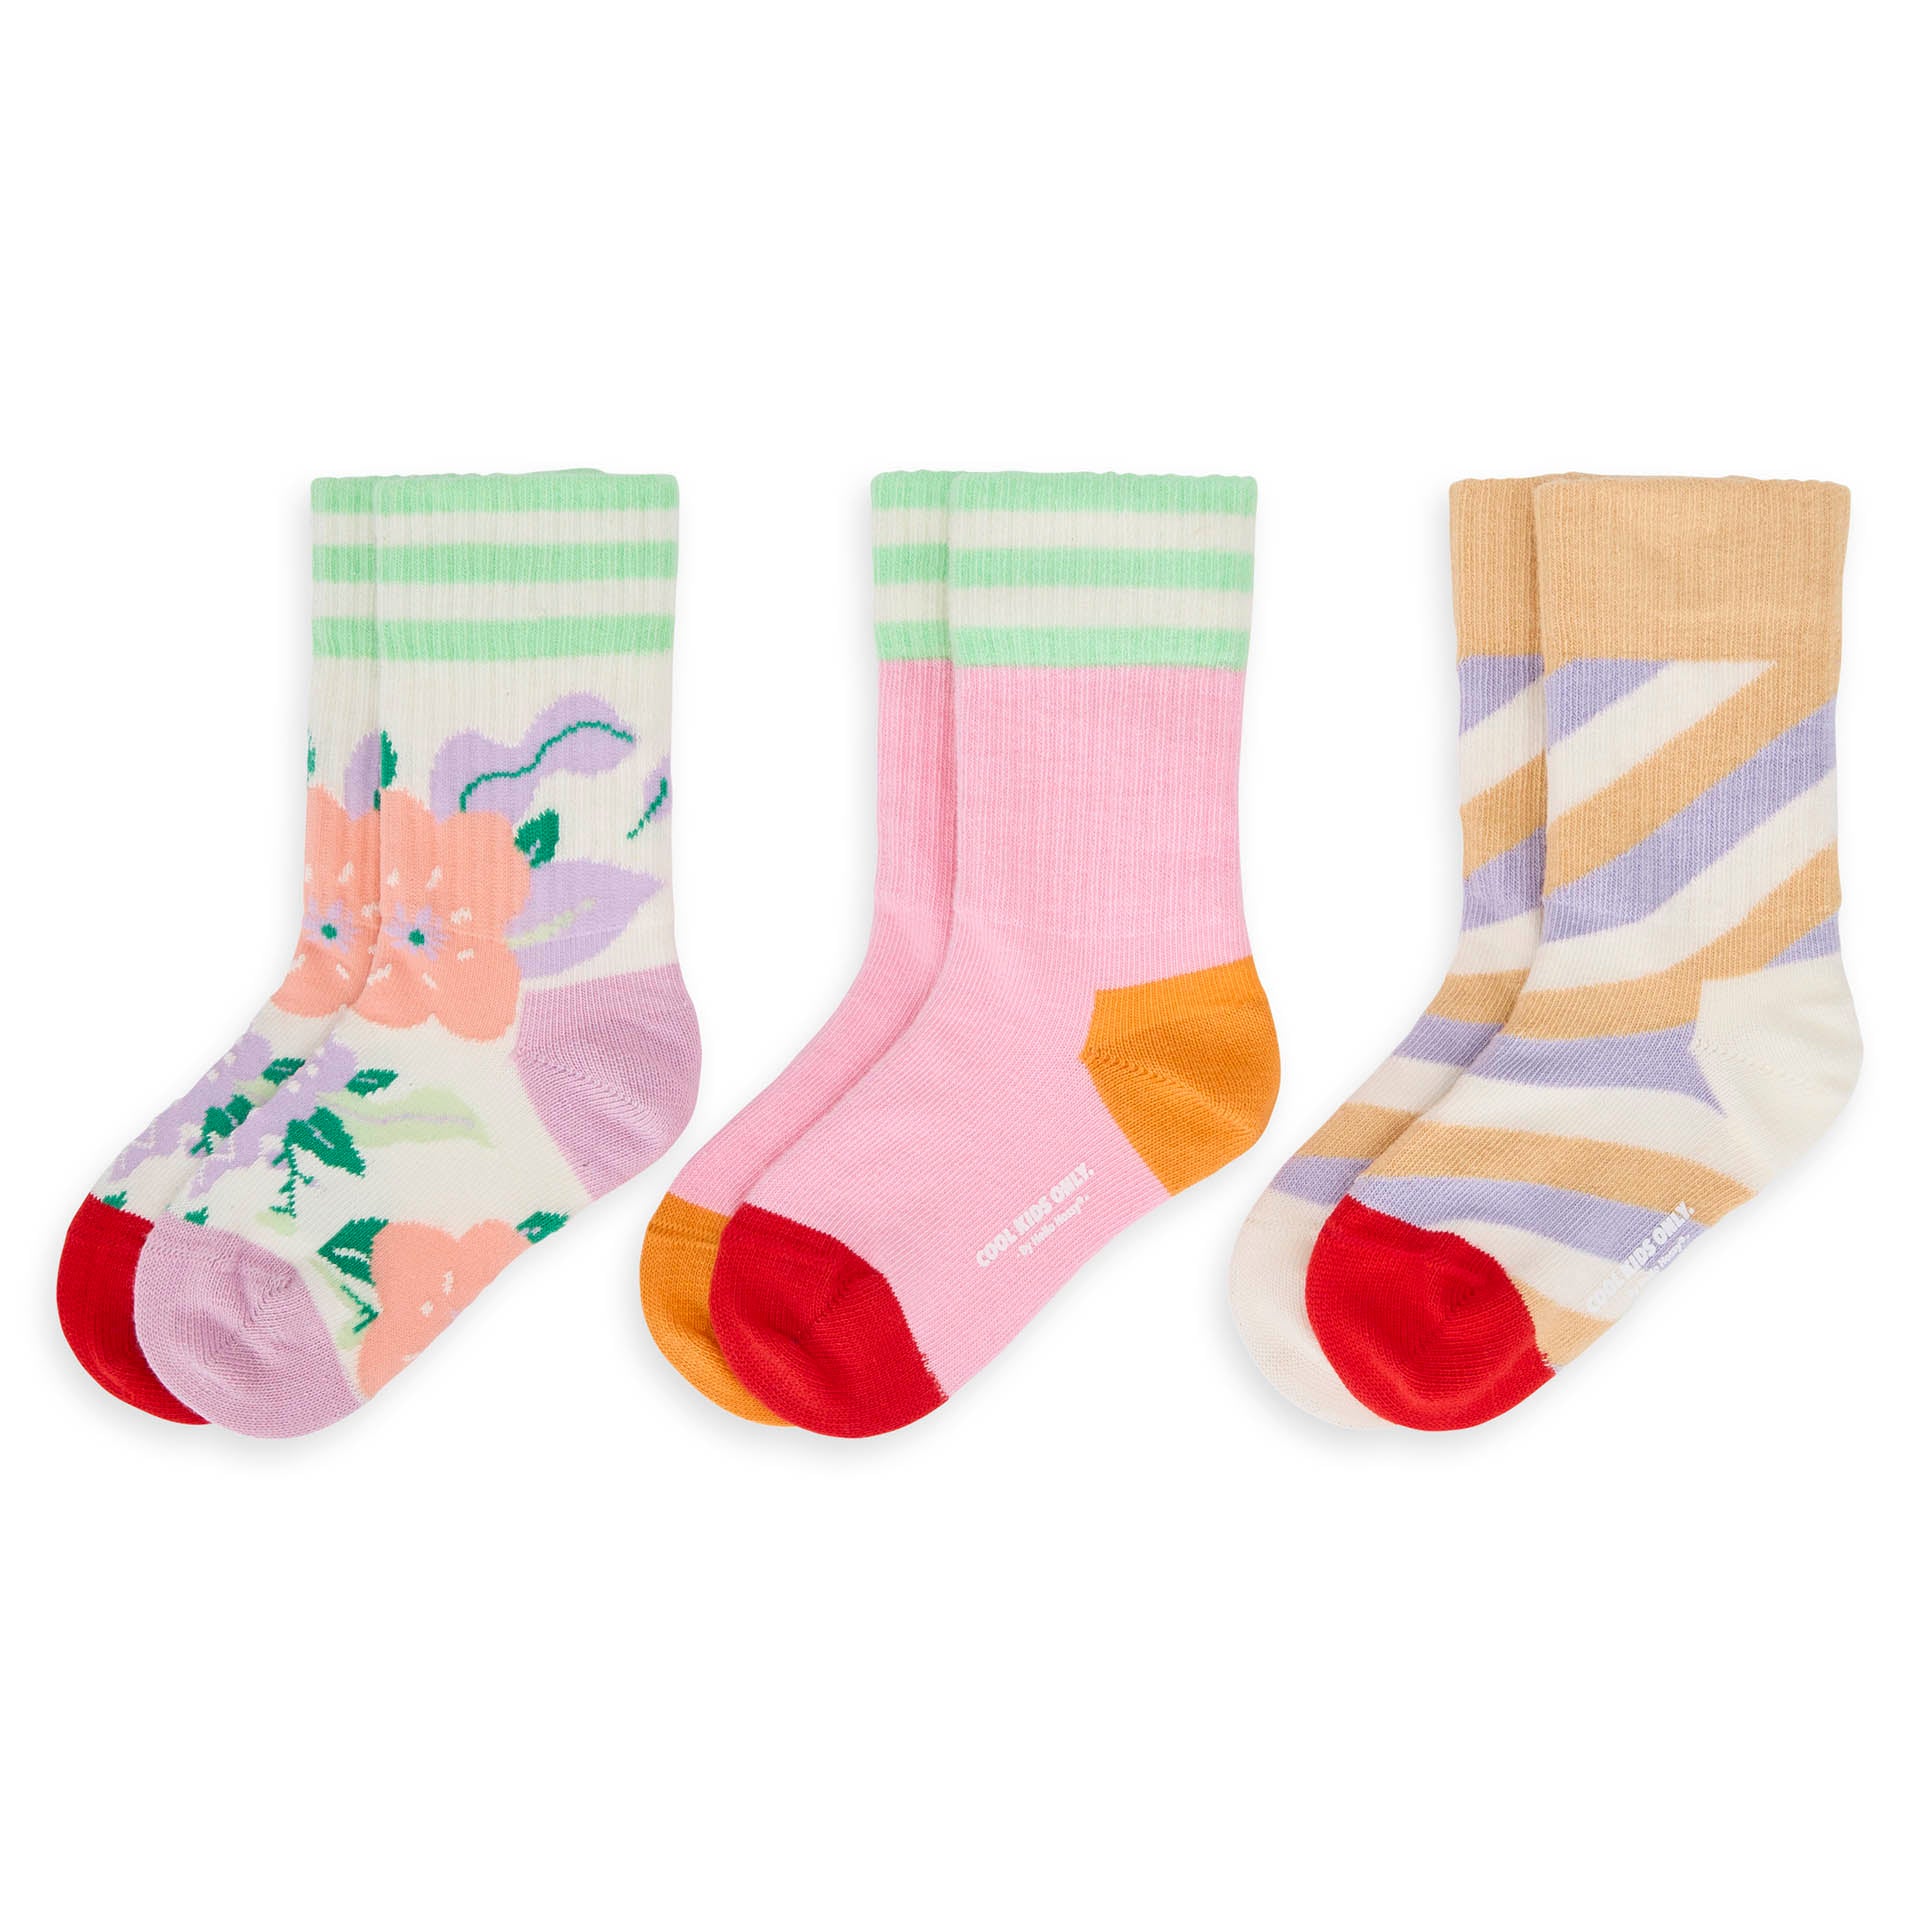 Chaussettes Enfants Flowers, coton biologique, accessoire coloré, cadeau enfant, dès 1 an, Cool Kids Only !